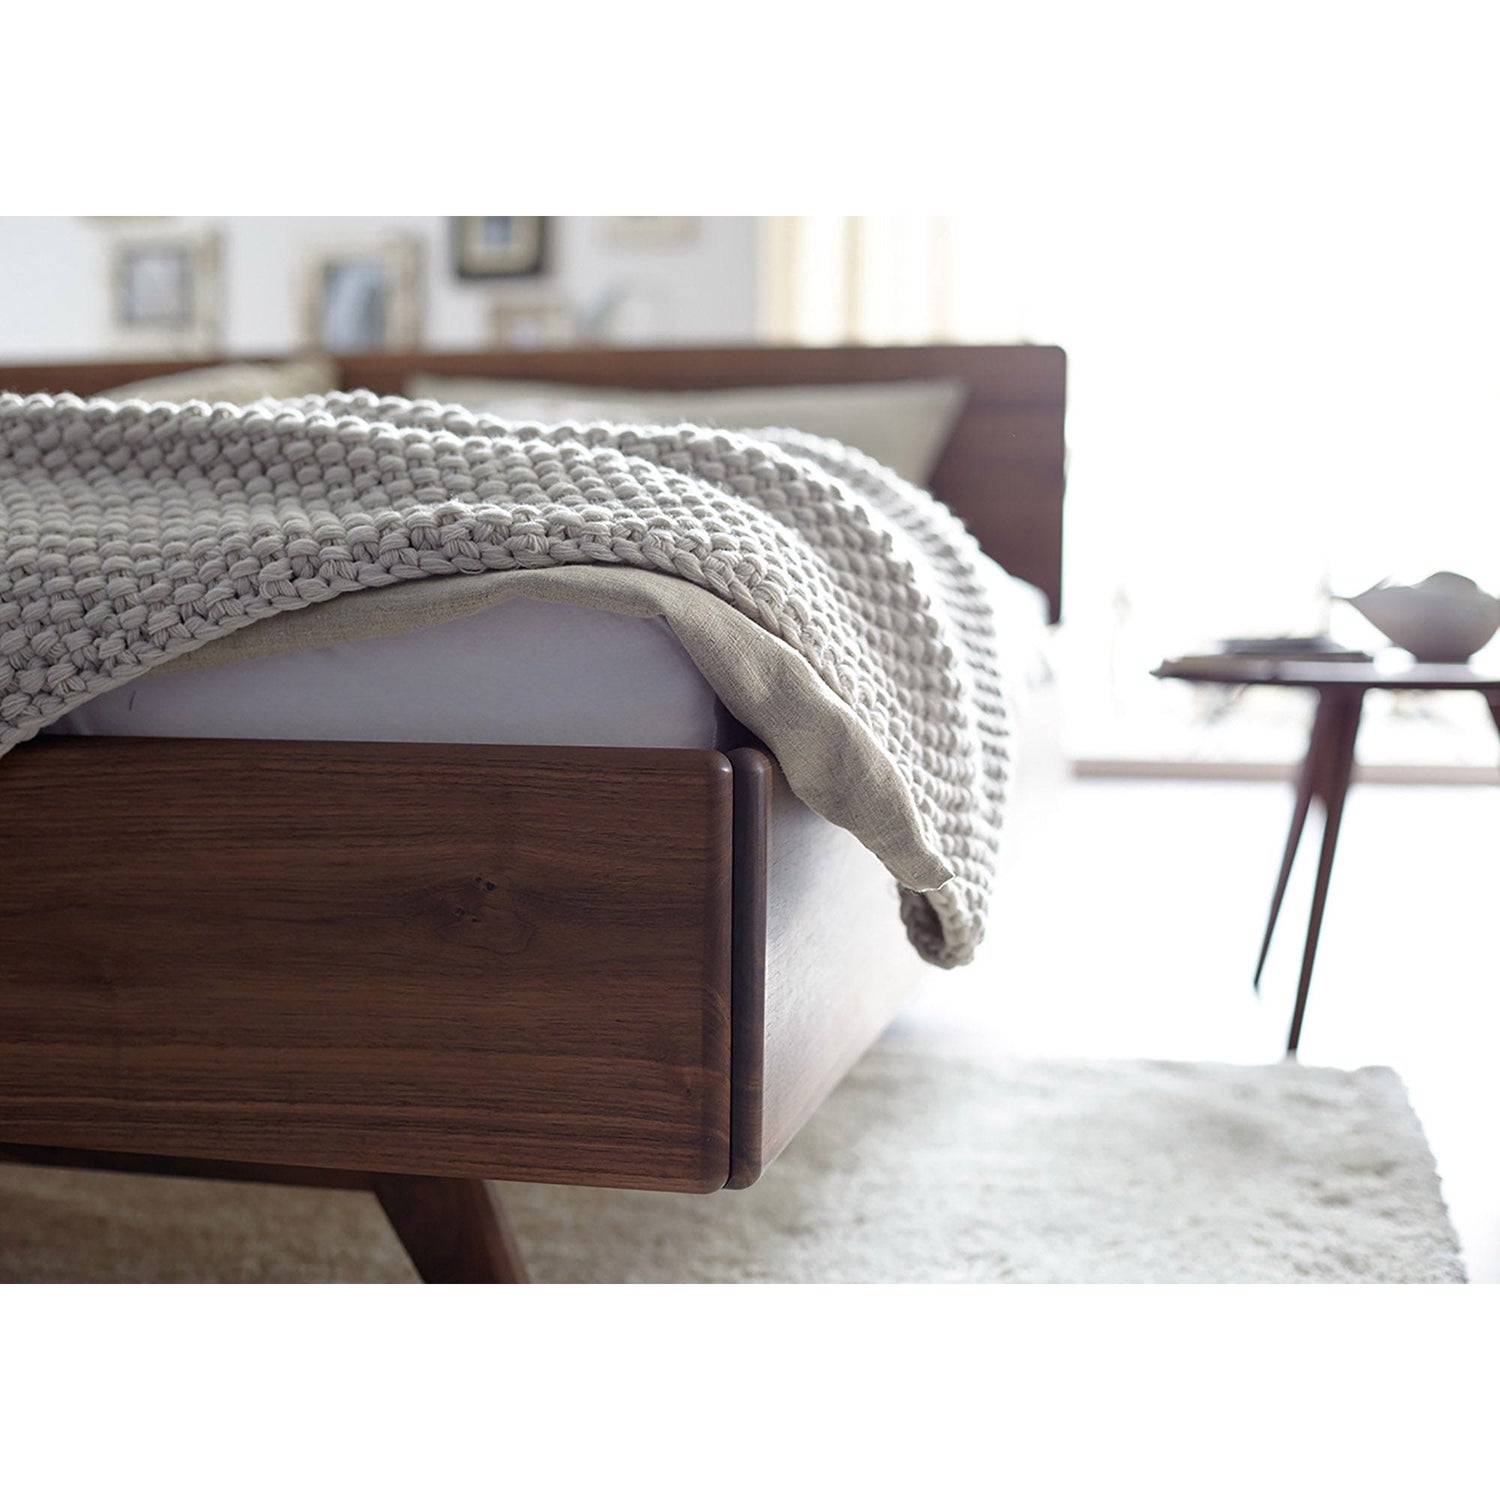 Bett DONNA aus Massivholz im Bettenfachgeschäft bei Stuttgart - Massivholzbetten und Massivholzmöbel - ökologisch und nachhaltig